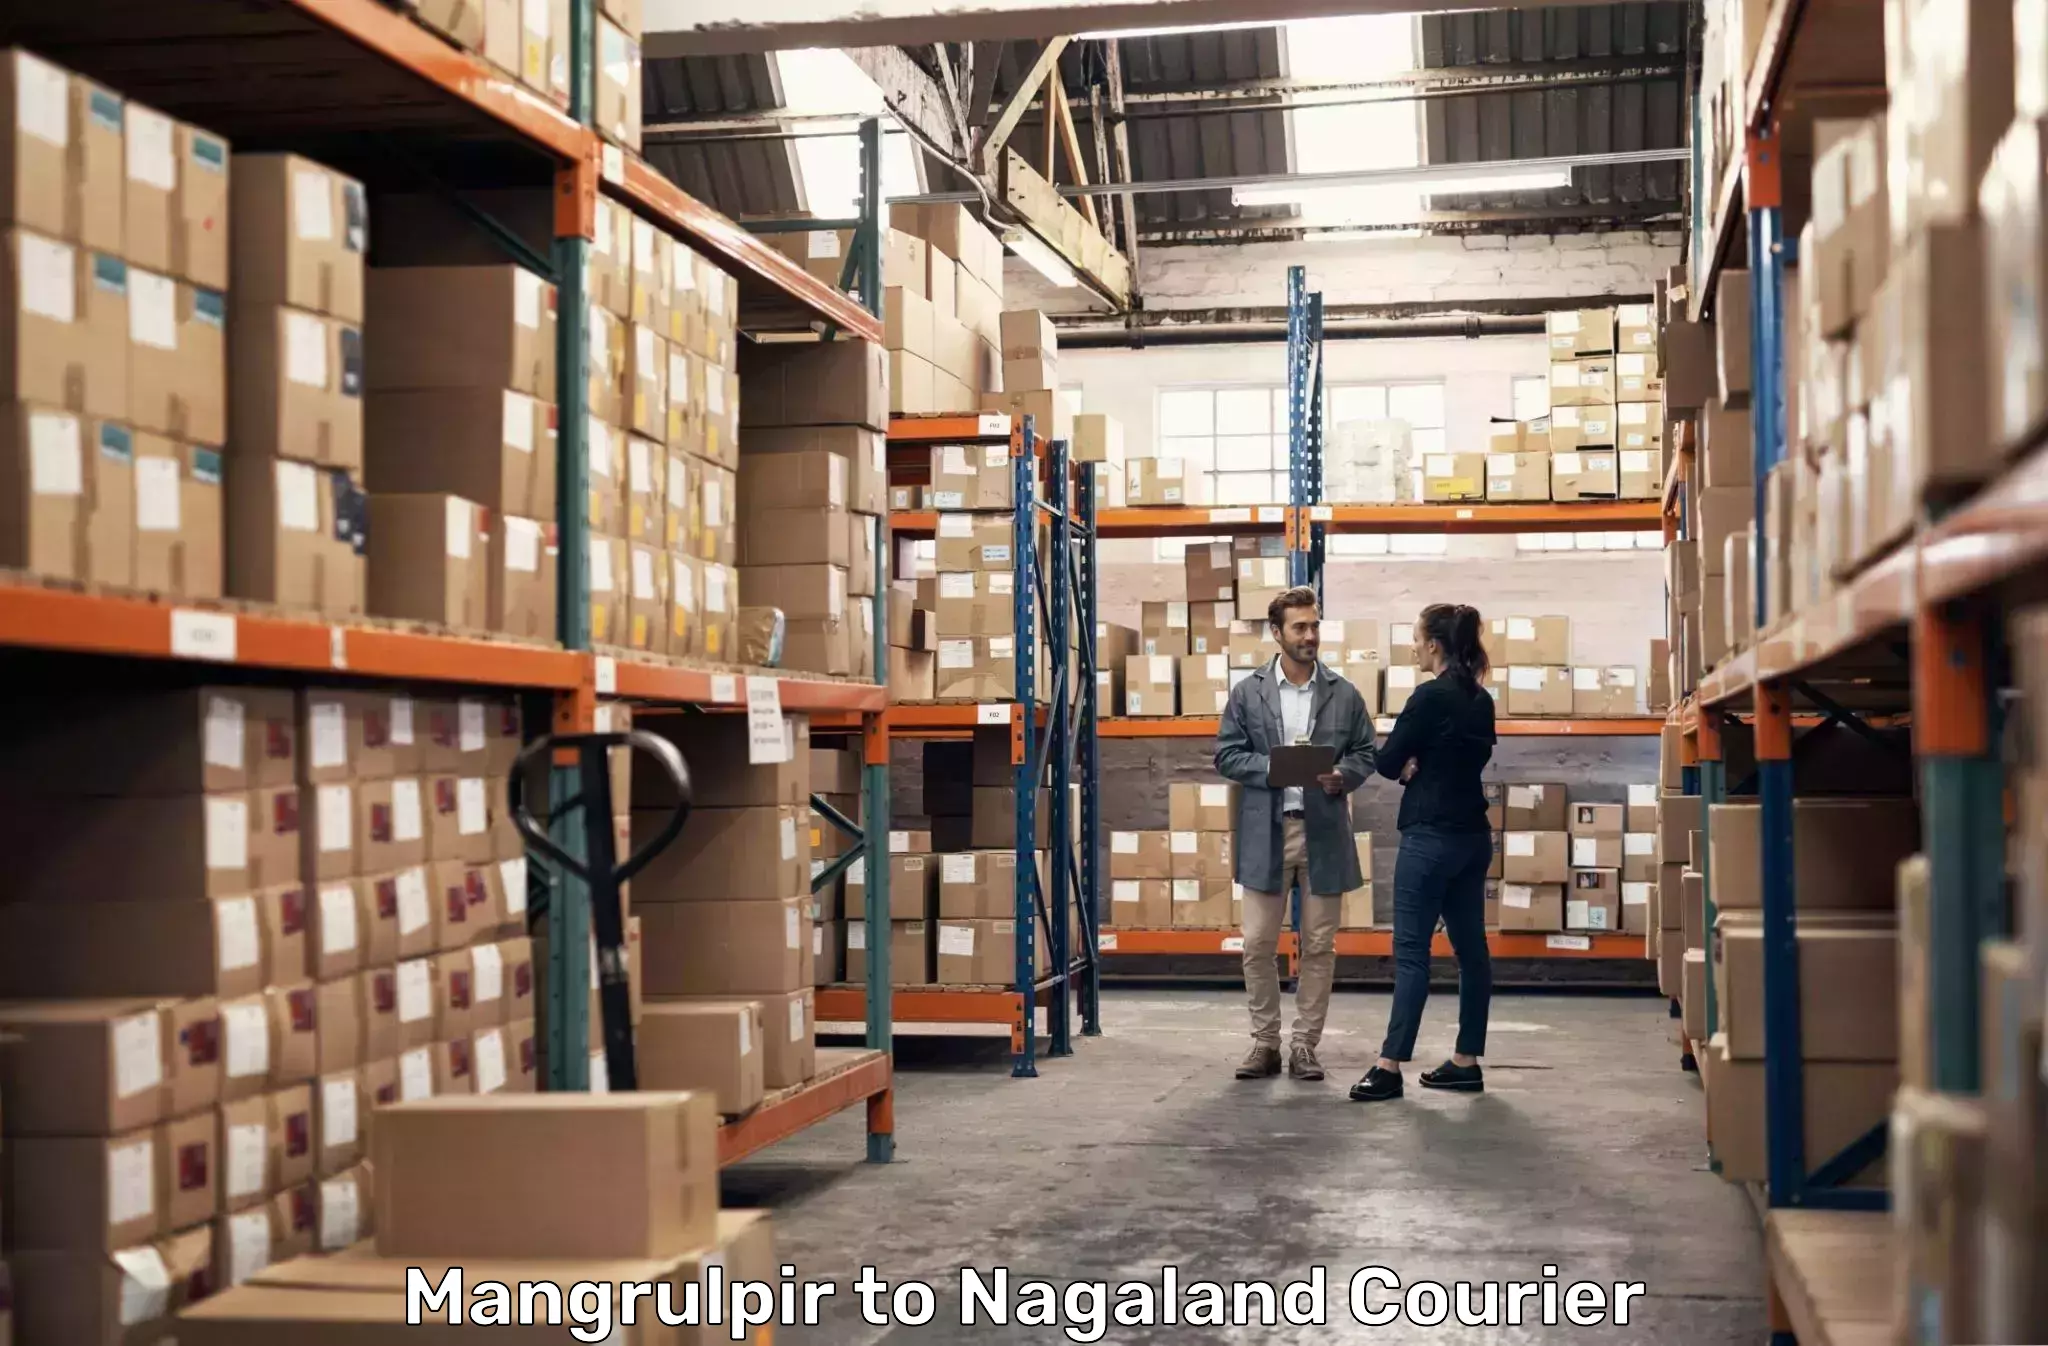 Express logistics service Mangrulpir to Nagaland